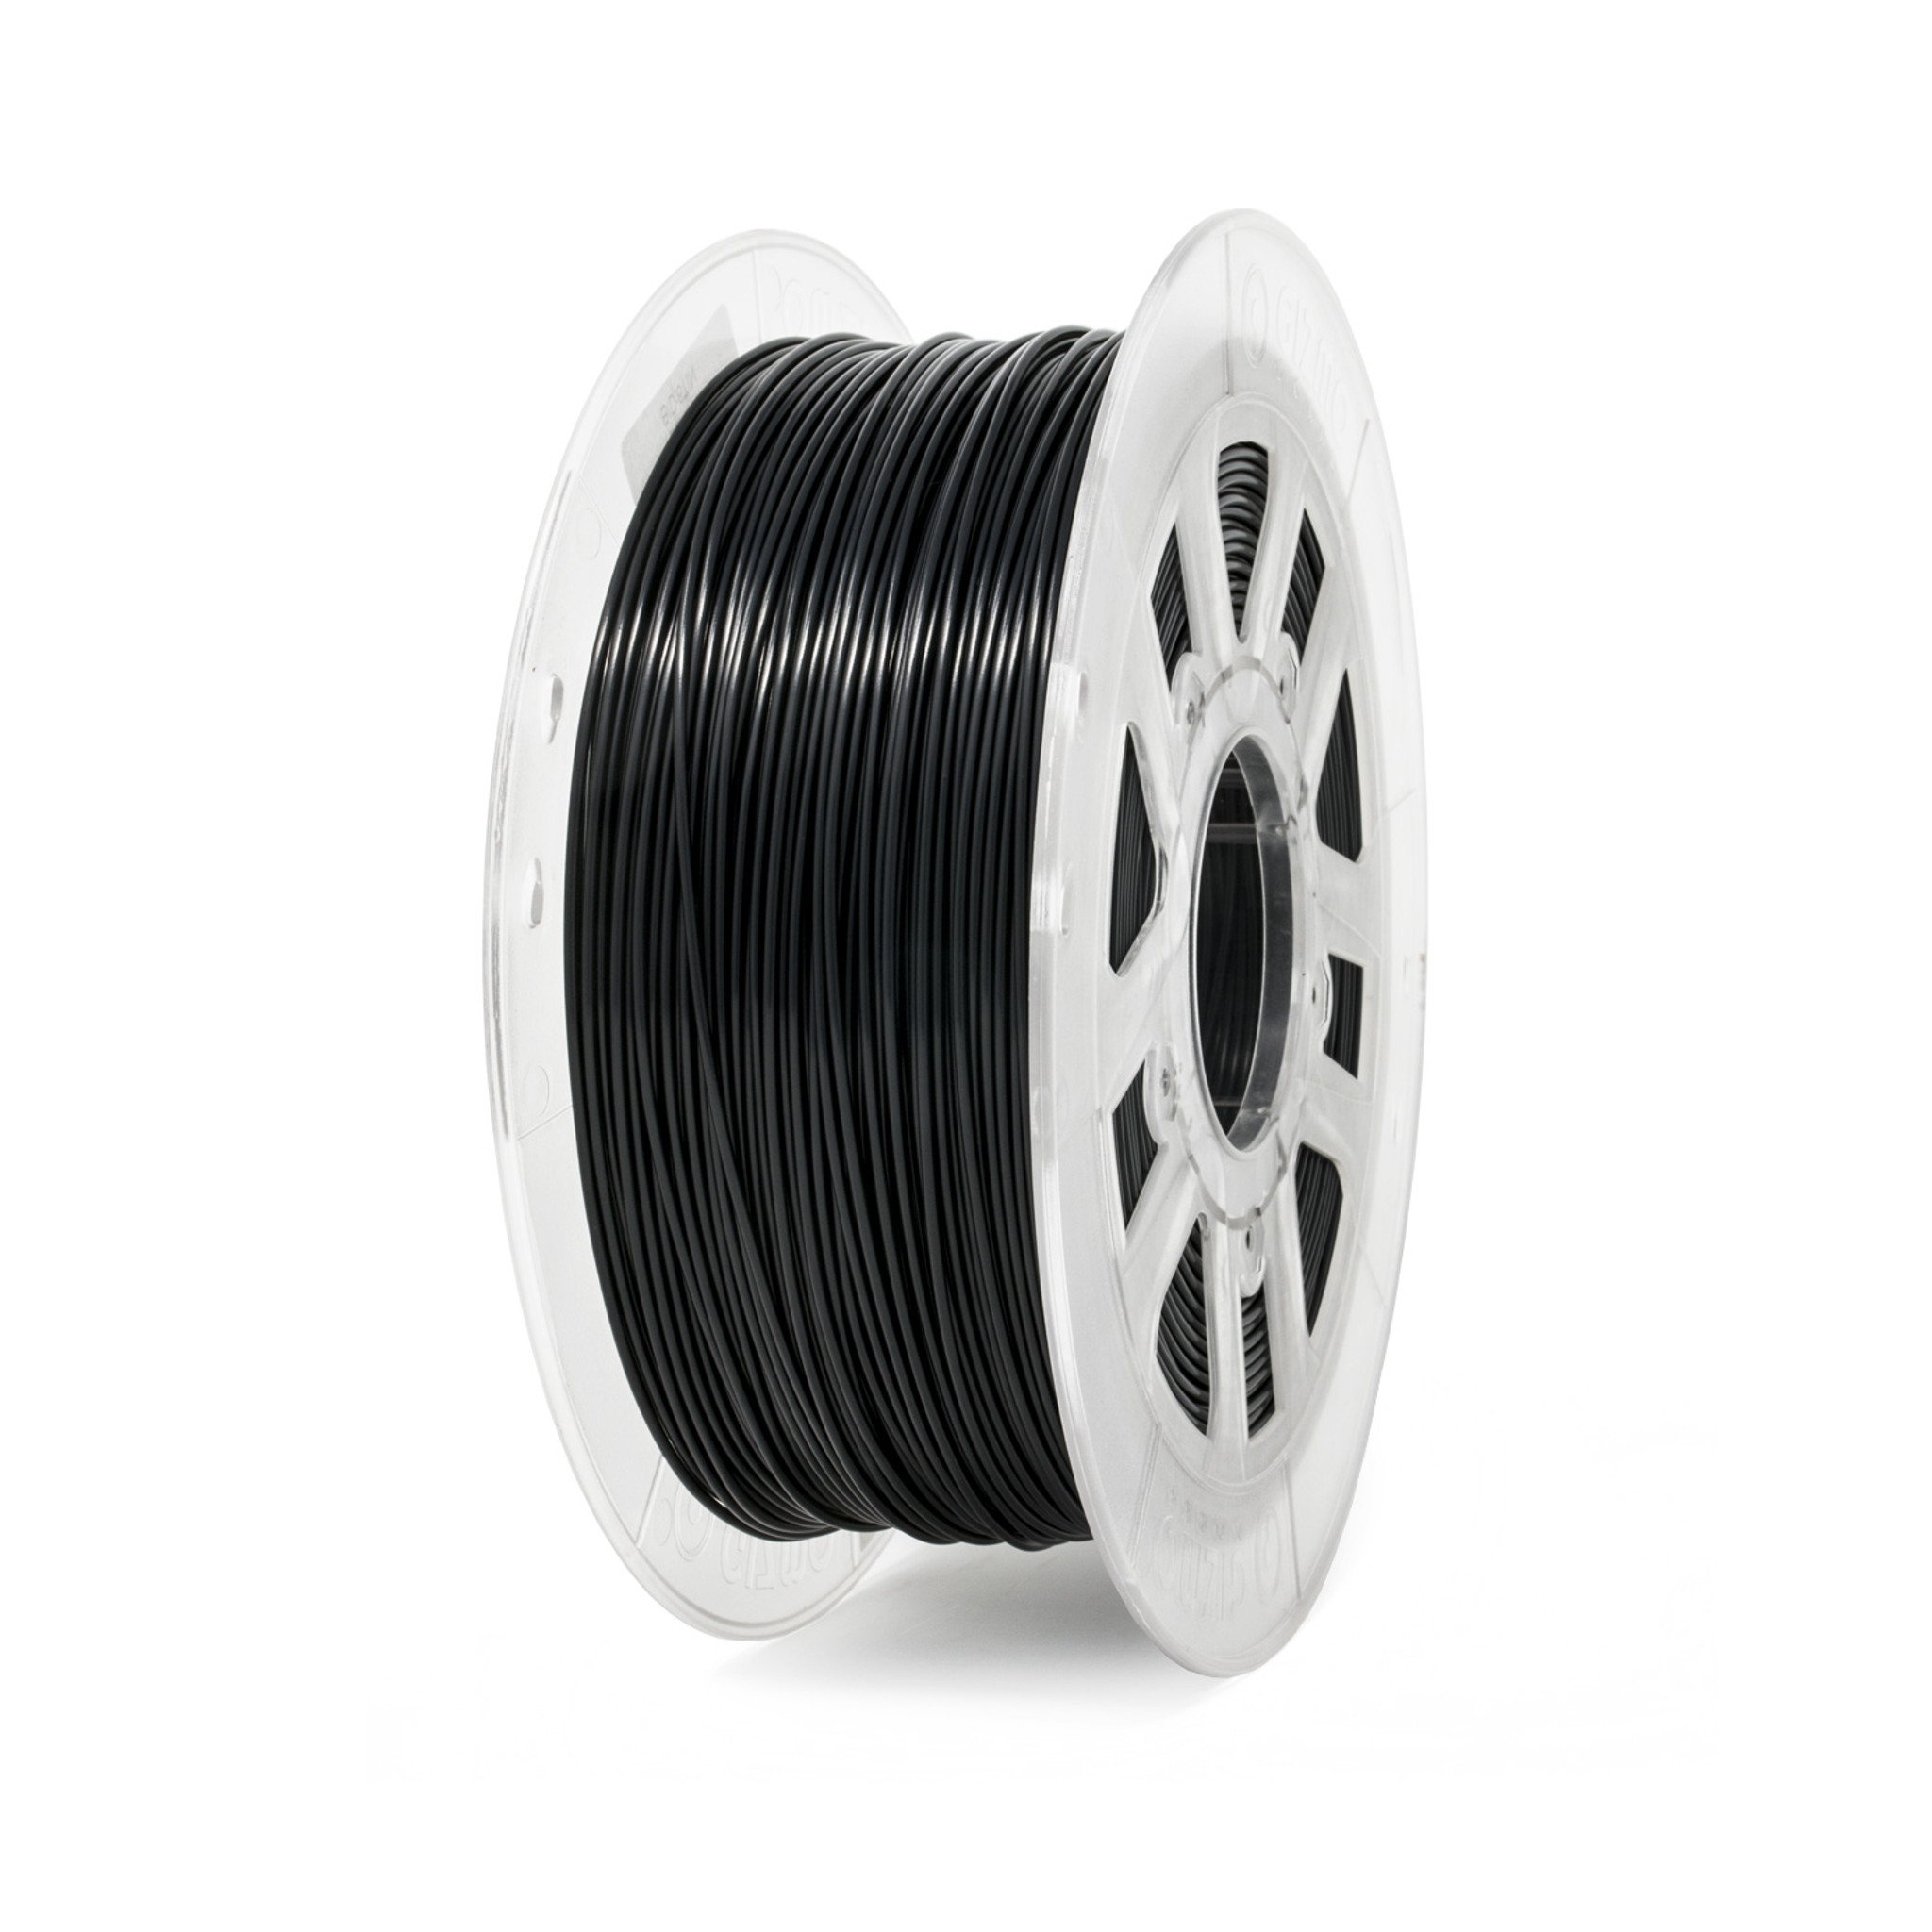 Acetal 3D Printer Filament - Gizmo Dorks